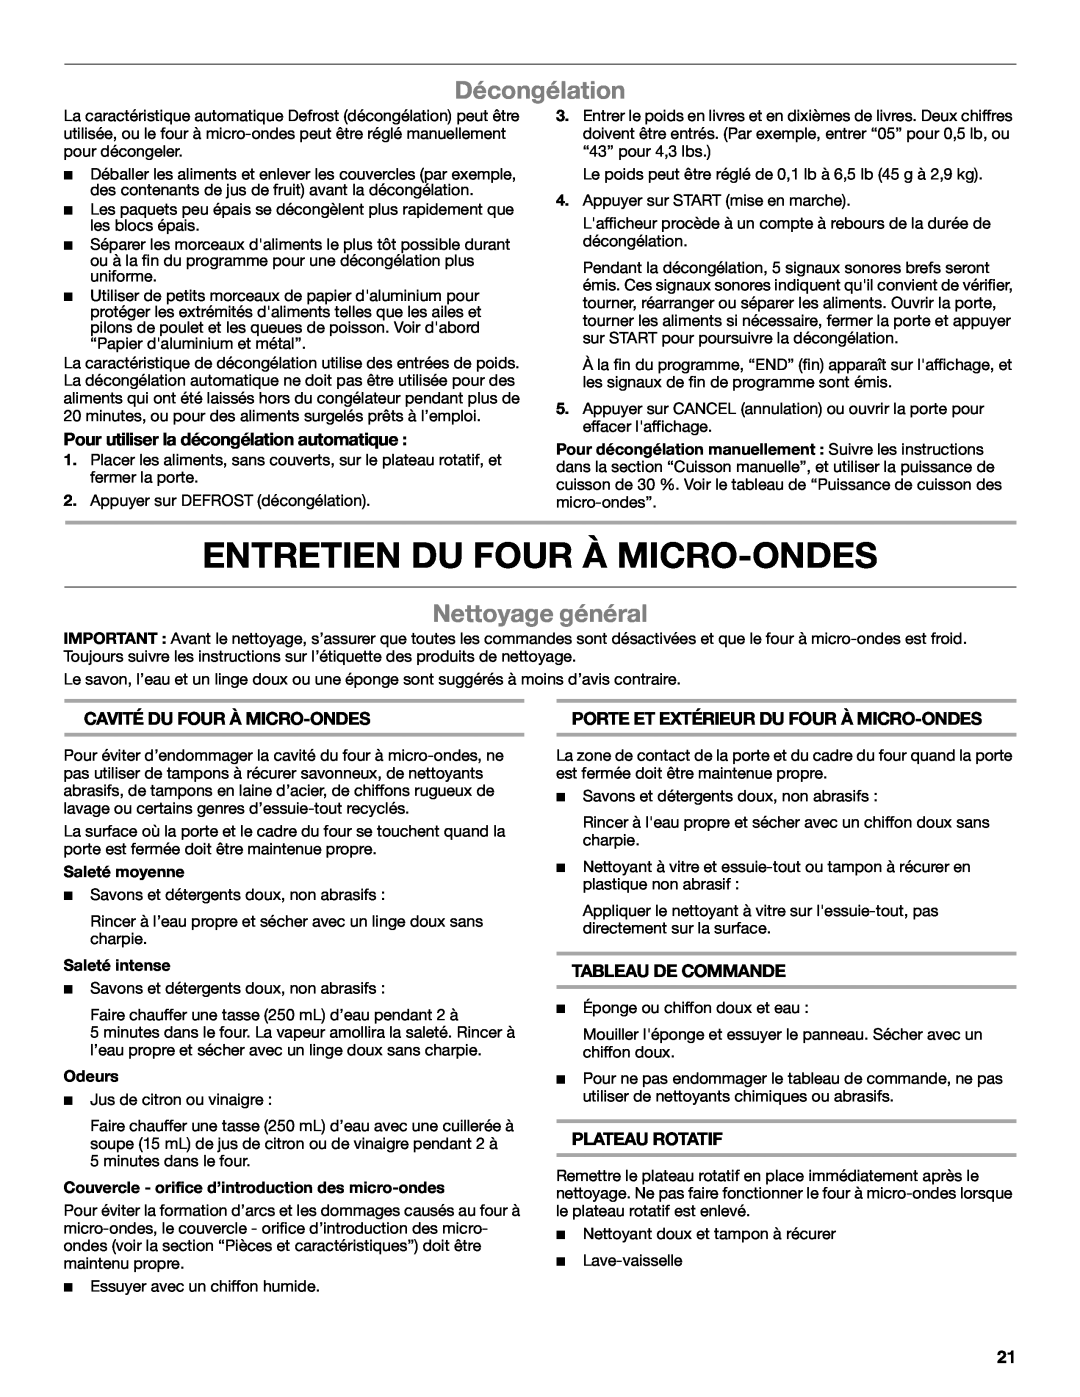 Whirlpool WMC10007 manual Entretien Du Four À Micro-Ondes, Décongélation, Nettoyage général 